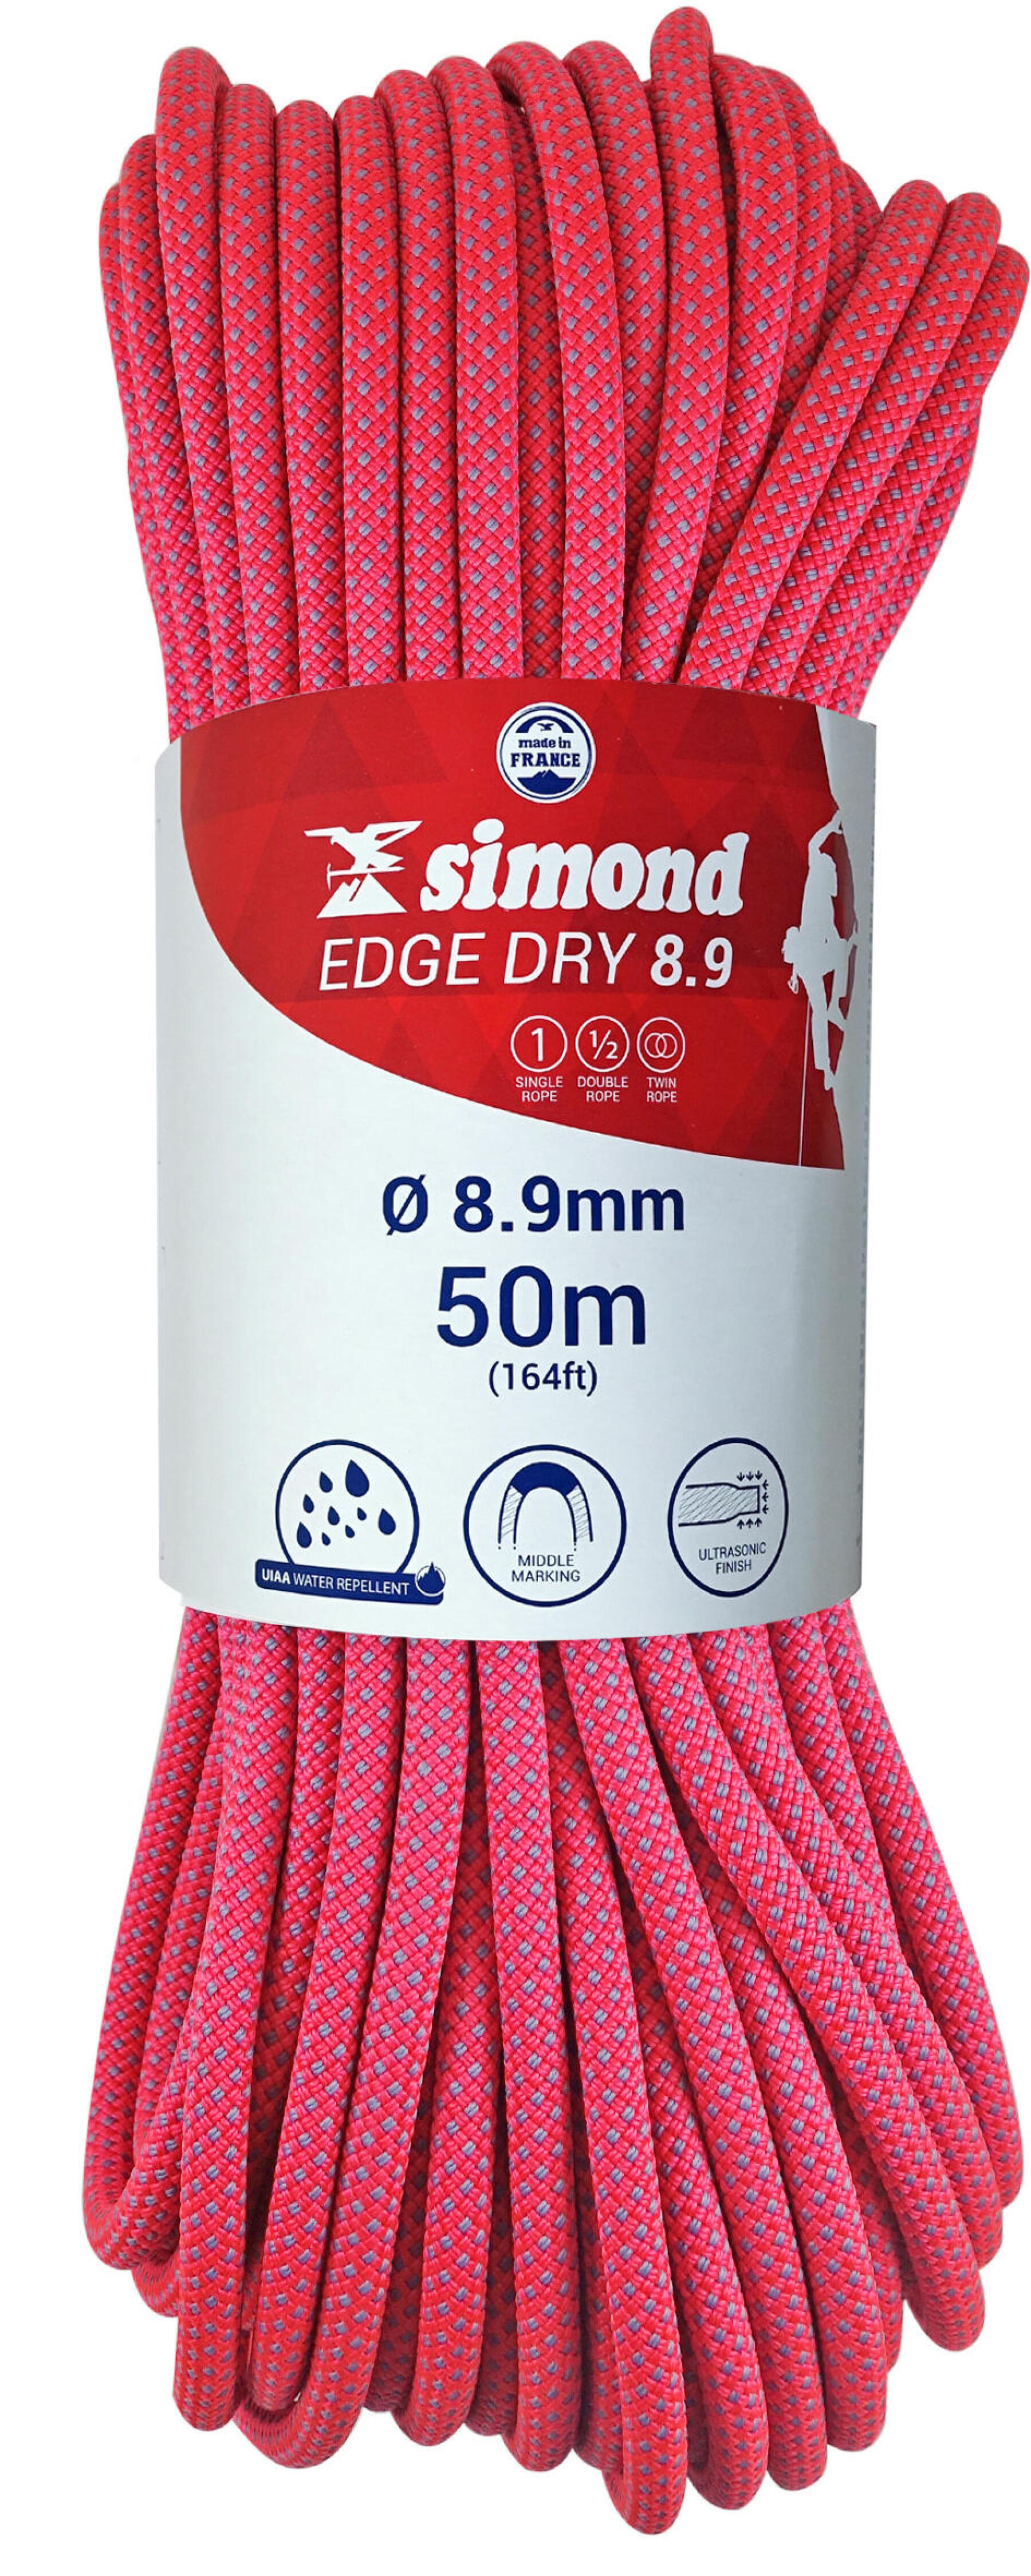 corde edge dry 8.9 50m simond 2018